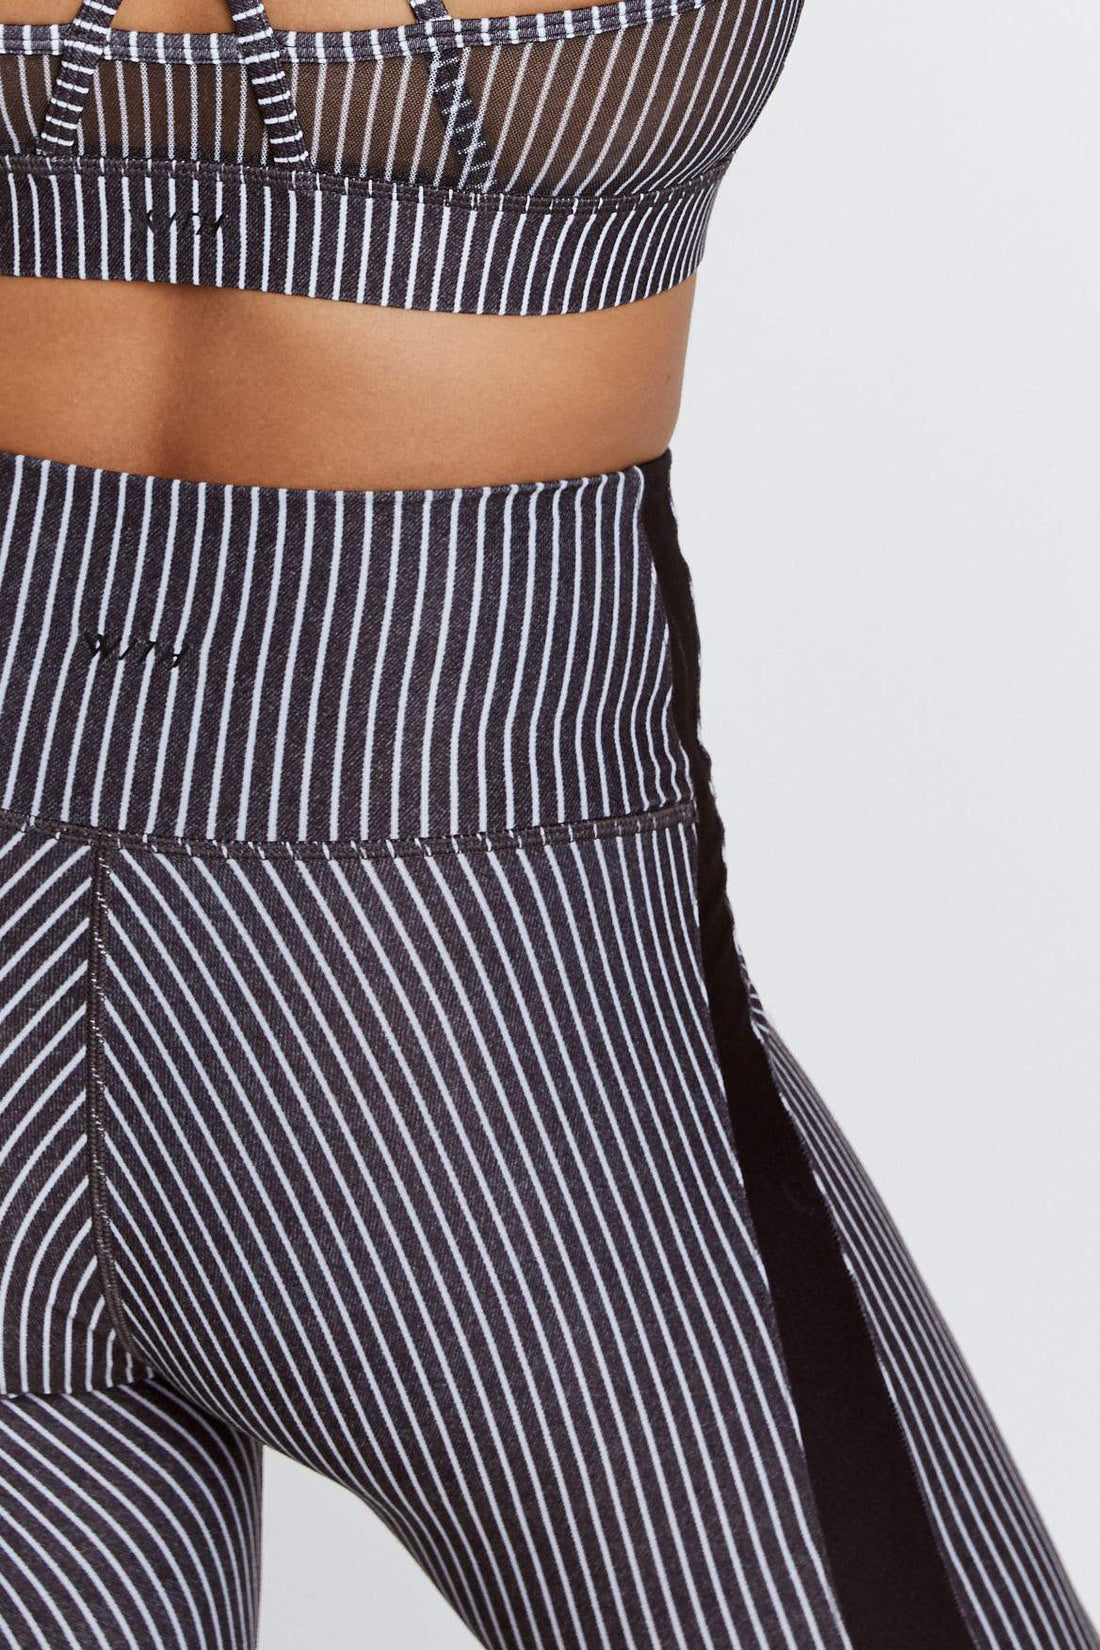 Harper Leggings Black And White Stripe